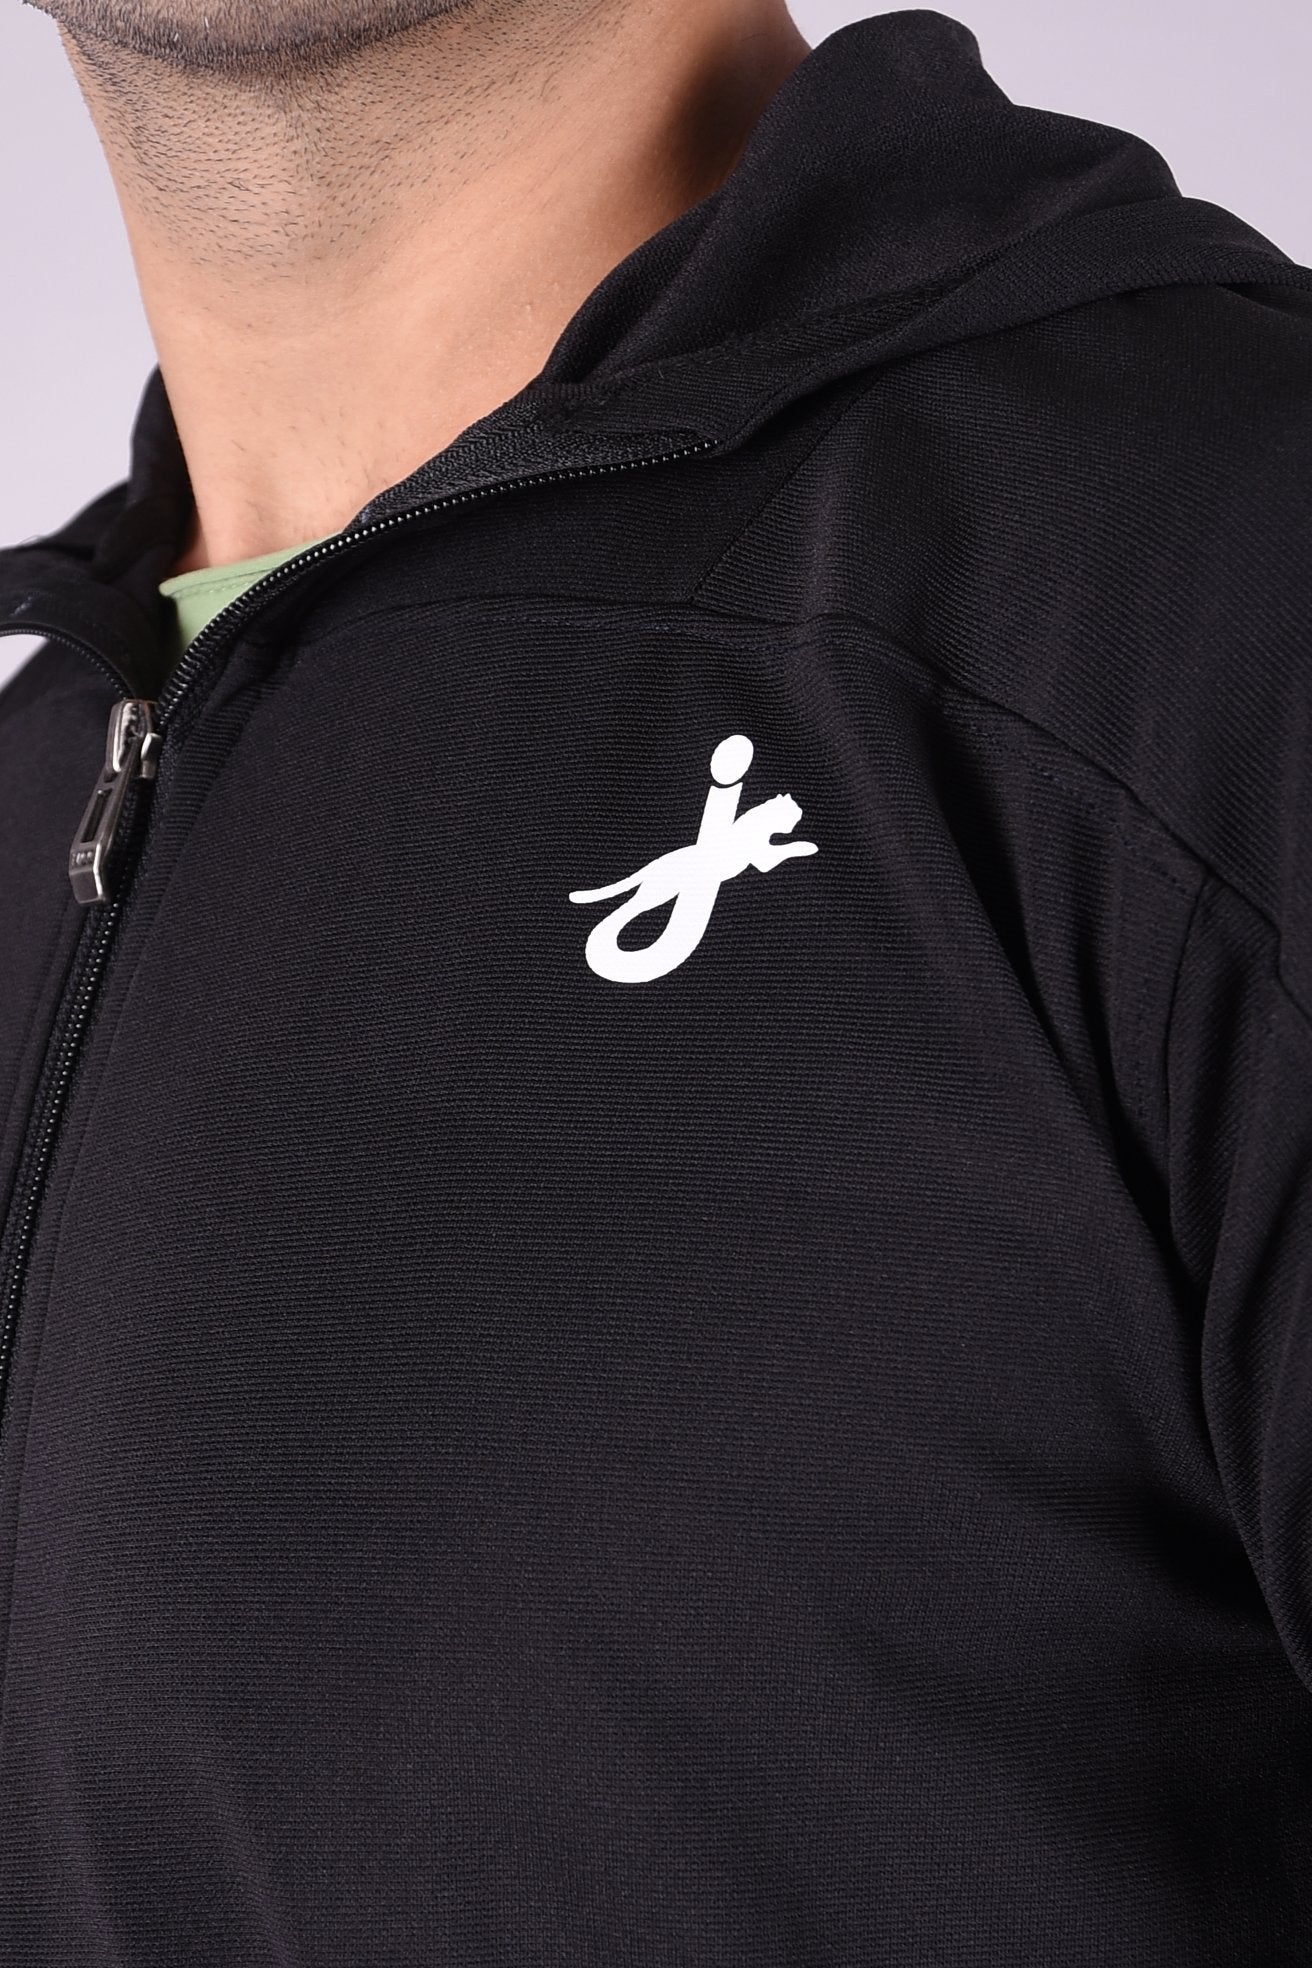 JAGURO Stylish Men's Polyester Zipper Black Hoody Jacket